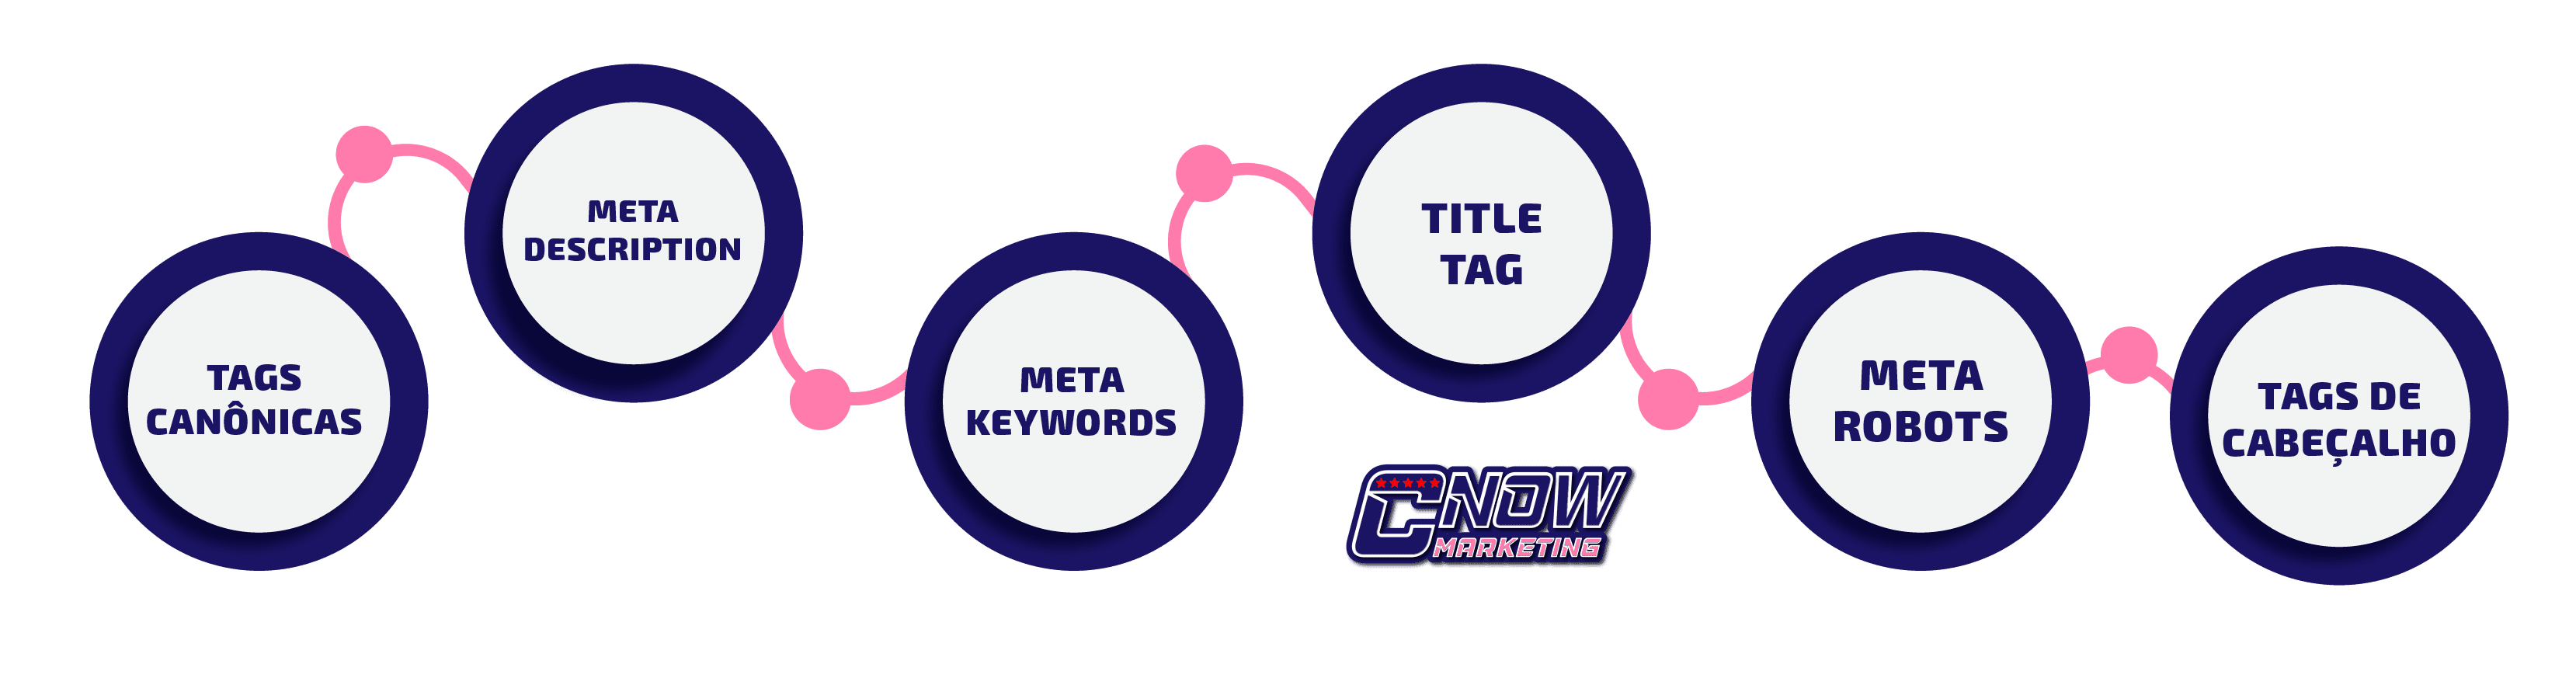 Quais ferramentas são usadas para criar meta tags?